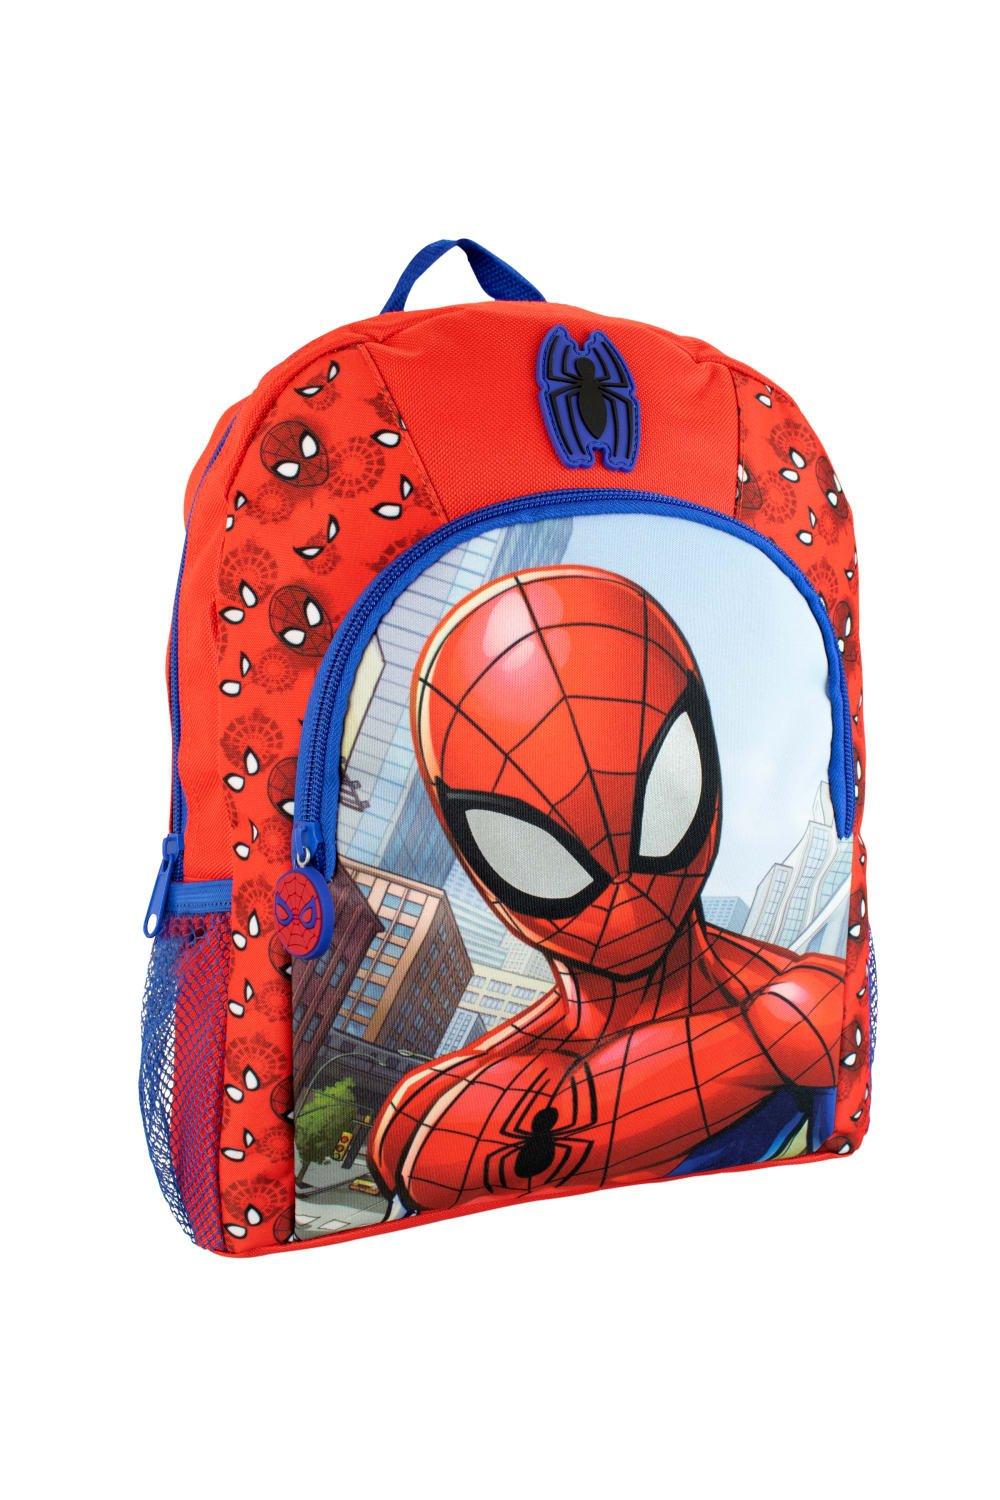 Детский рюкзак Spider-Man, красный рюкзак человека паука с подсветкой глаз marvel синий